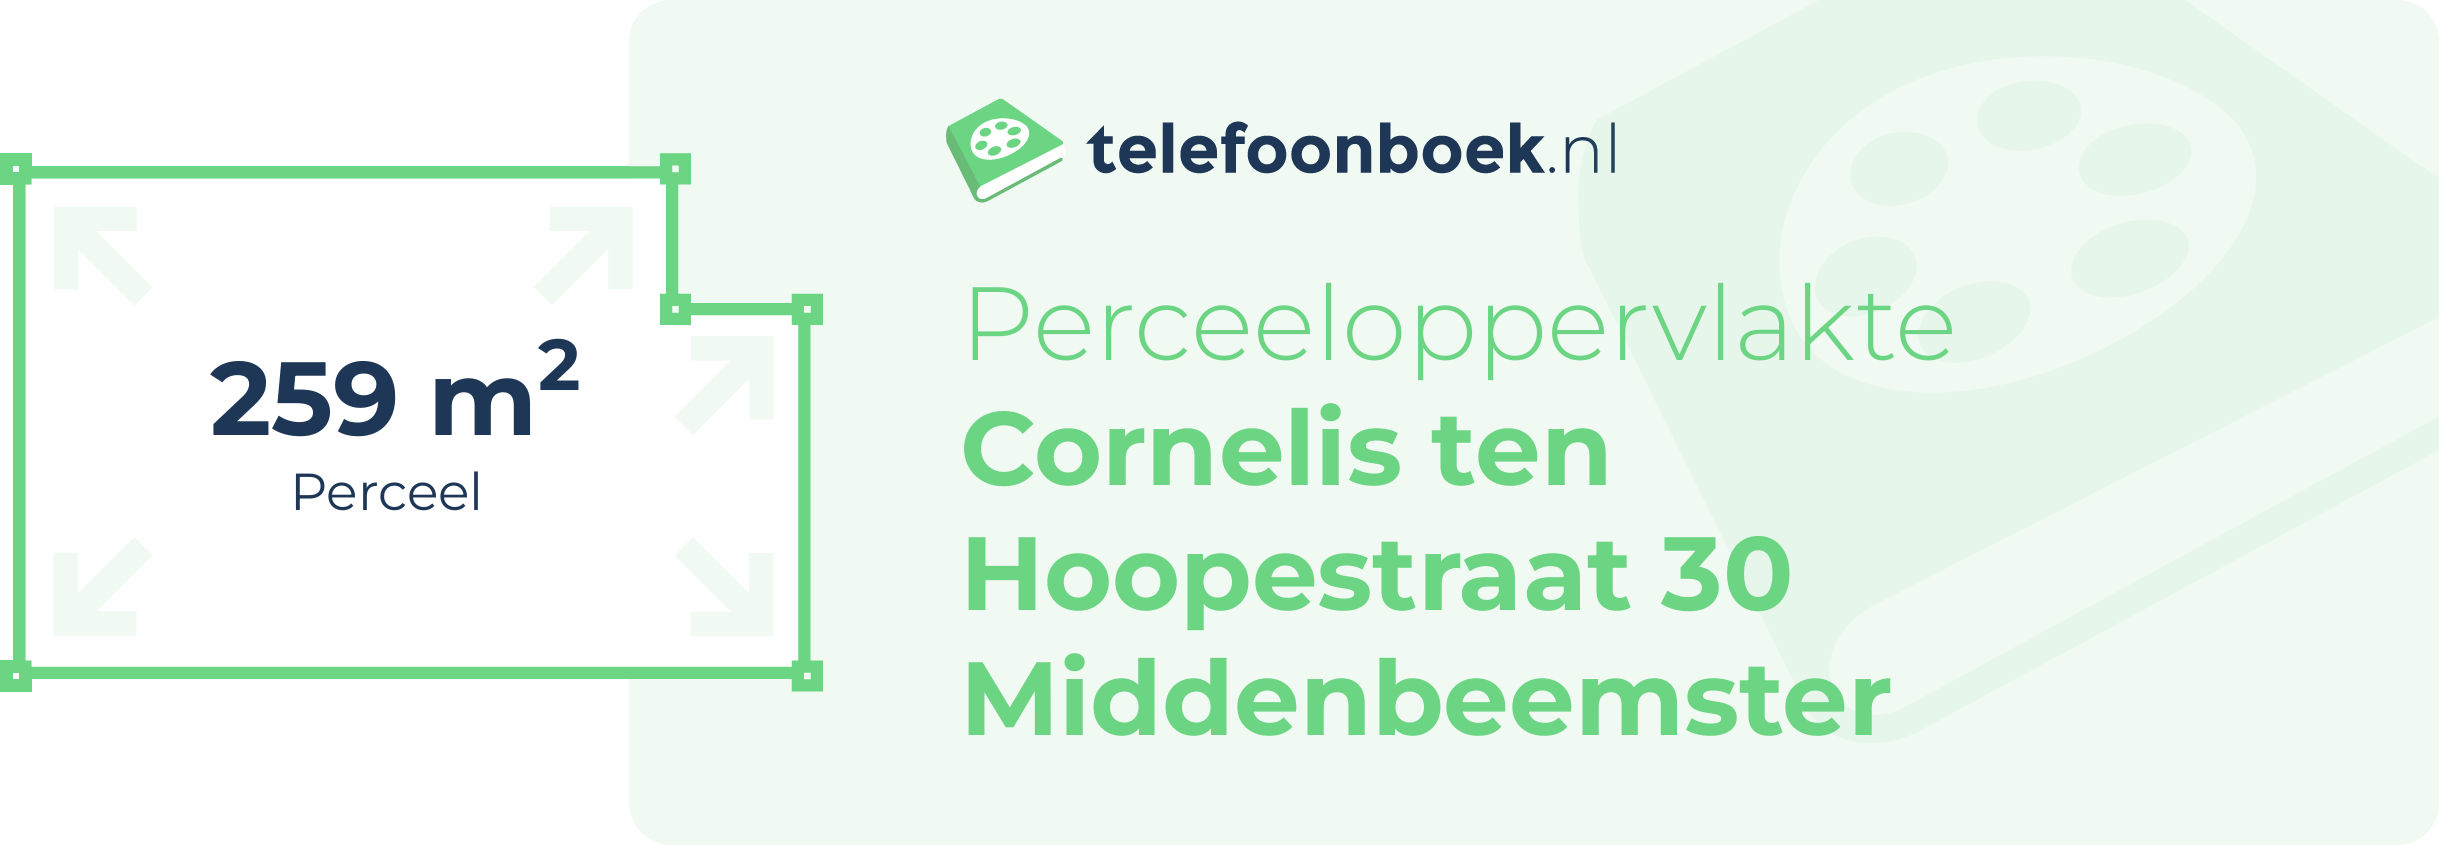 Perceeloppervlakte Cornelis Ten Hoopestraat 30 Middenbeemster